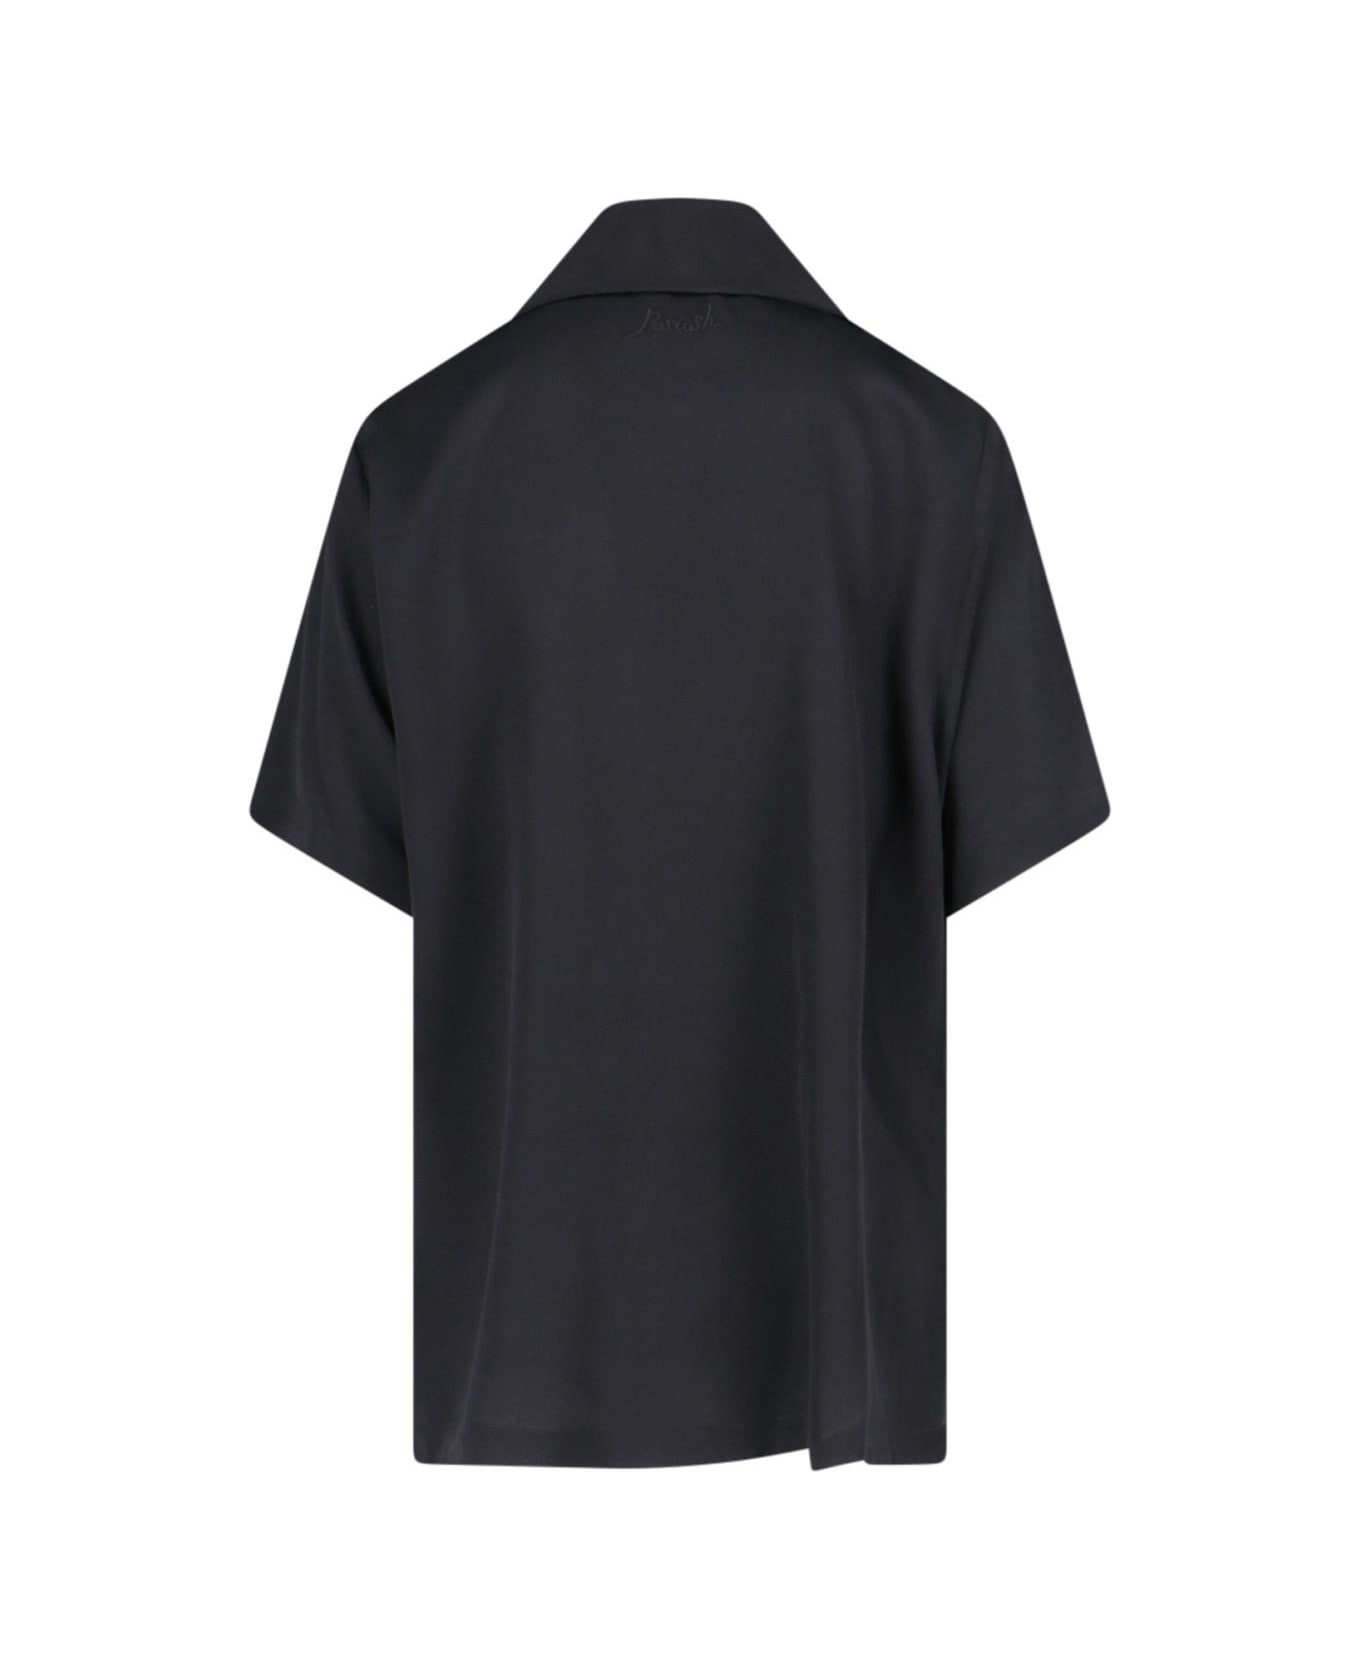 Parosh Short-sleeved Shirt - Nero シャツ